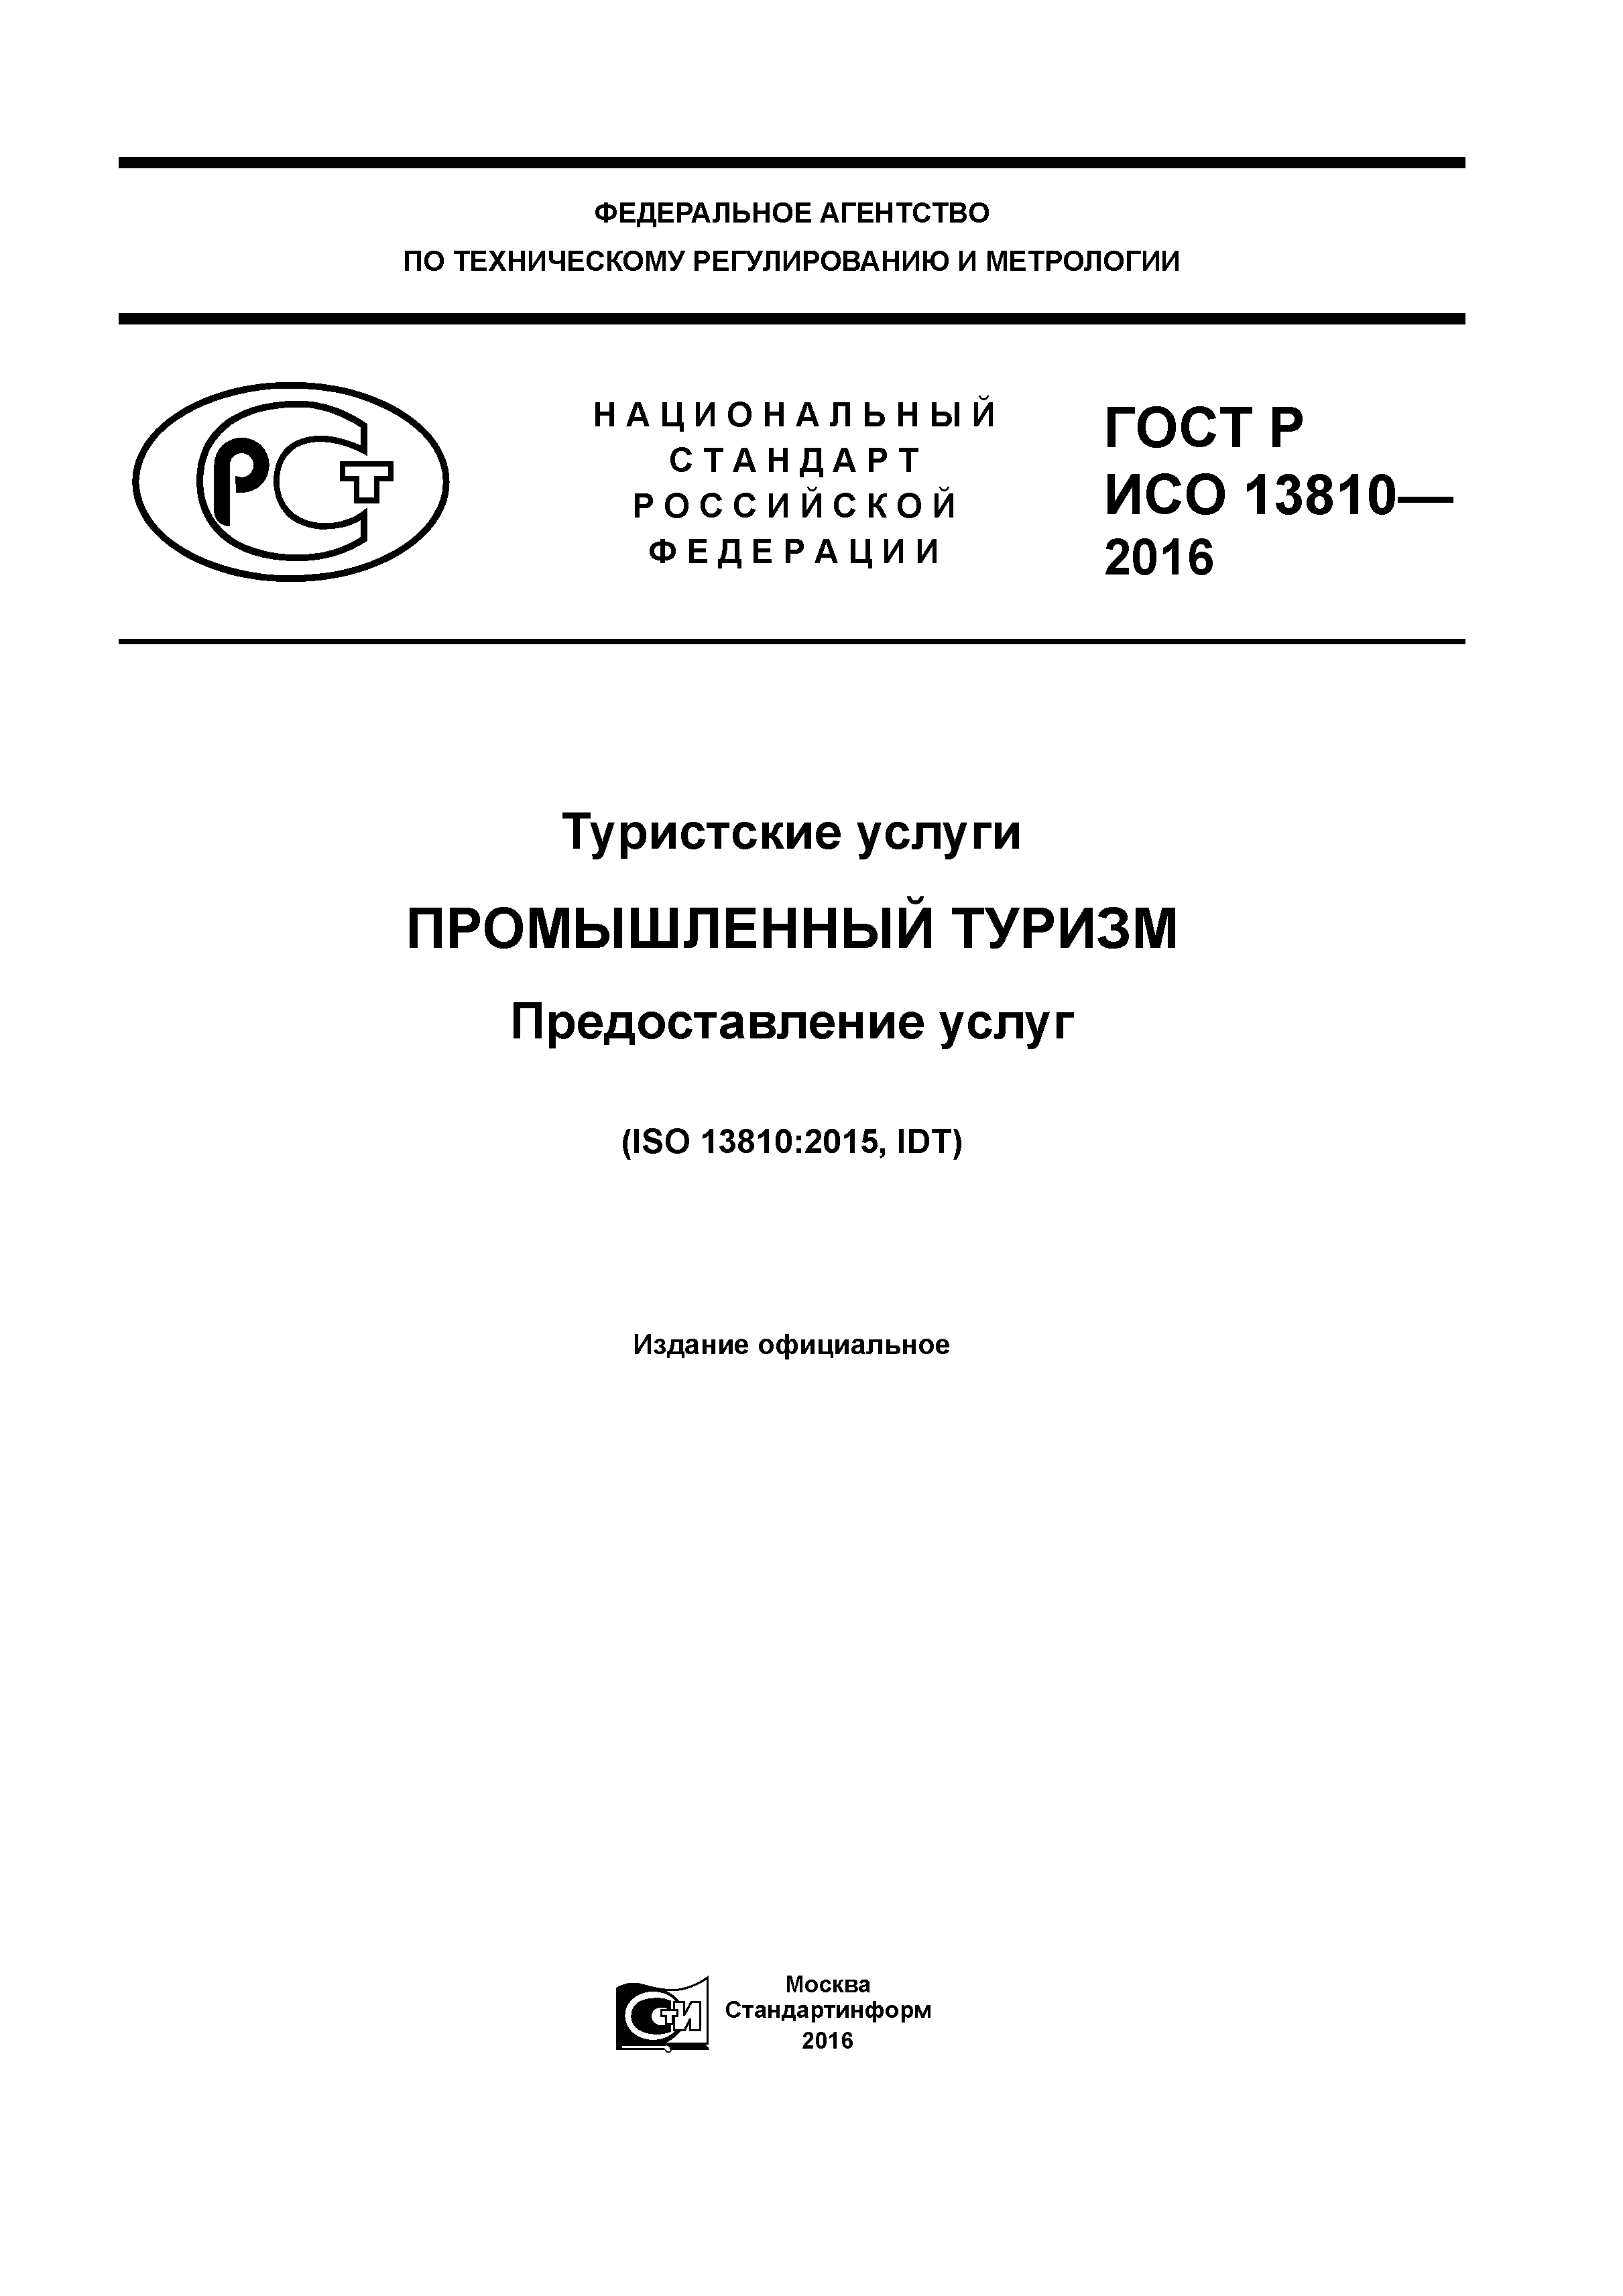 ГОСТ Р ИСО 13810-2016